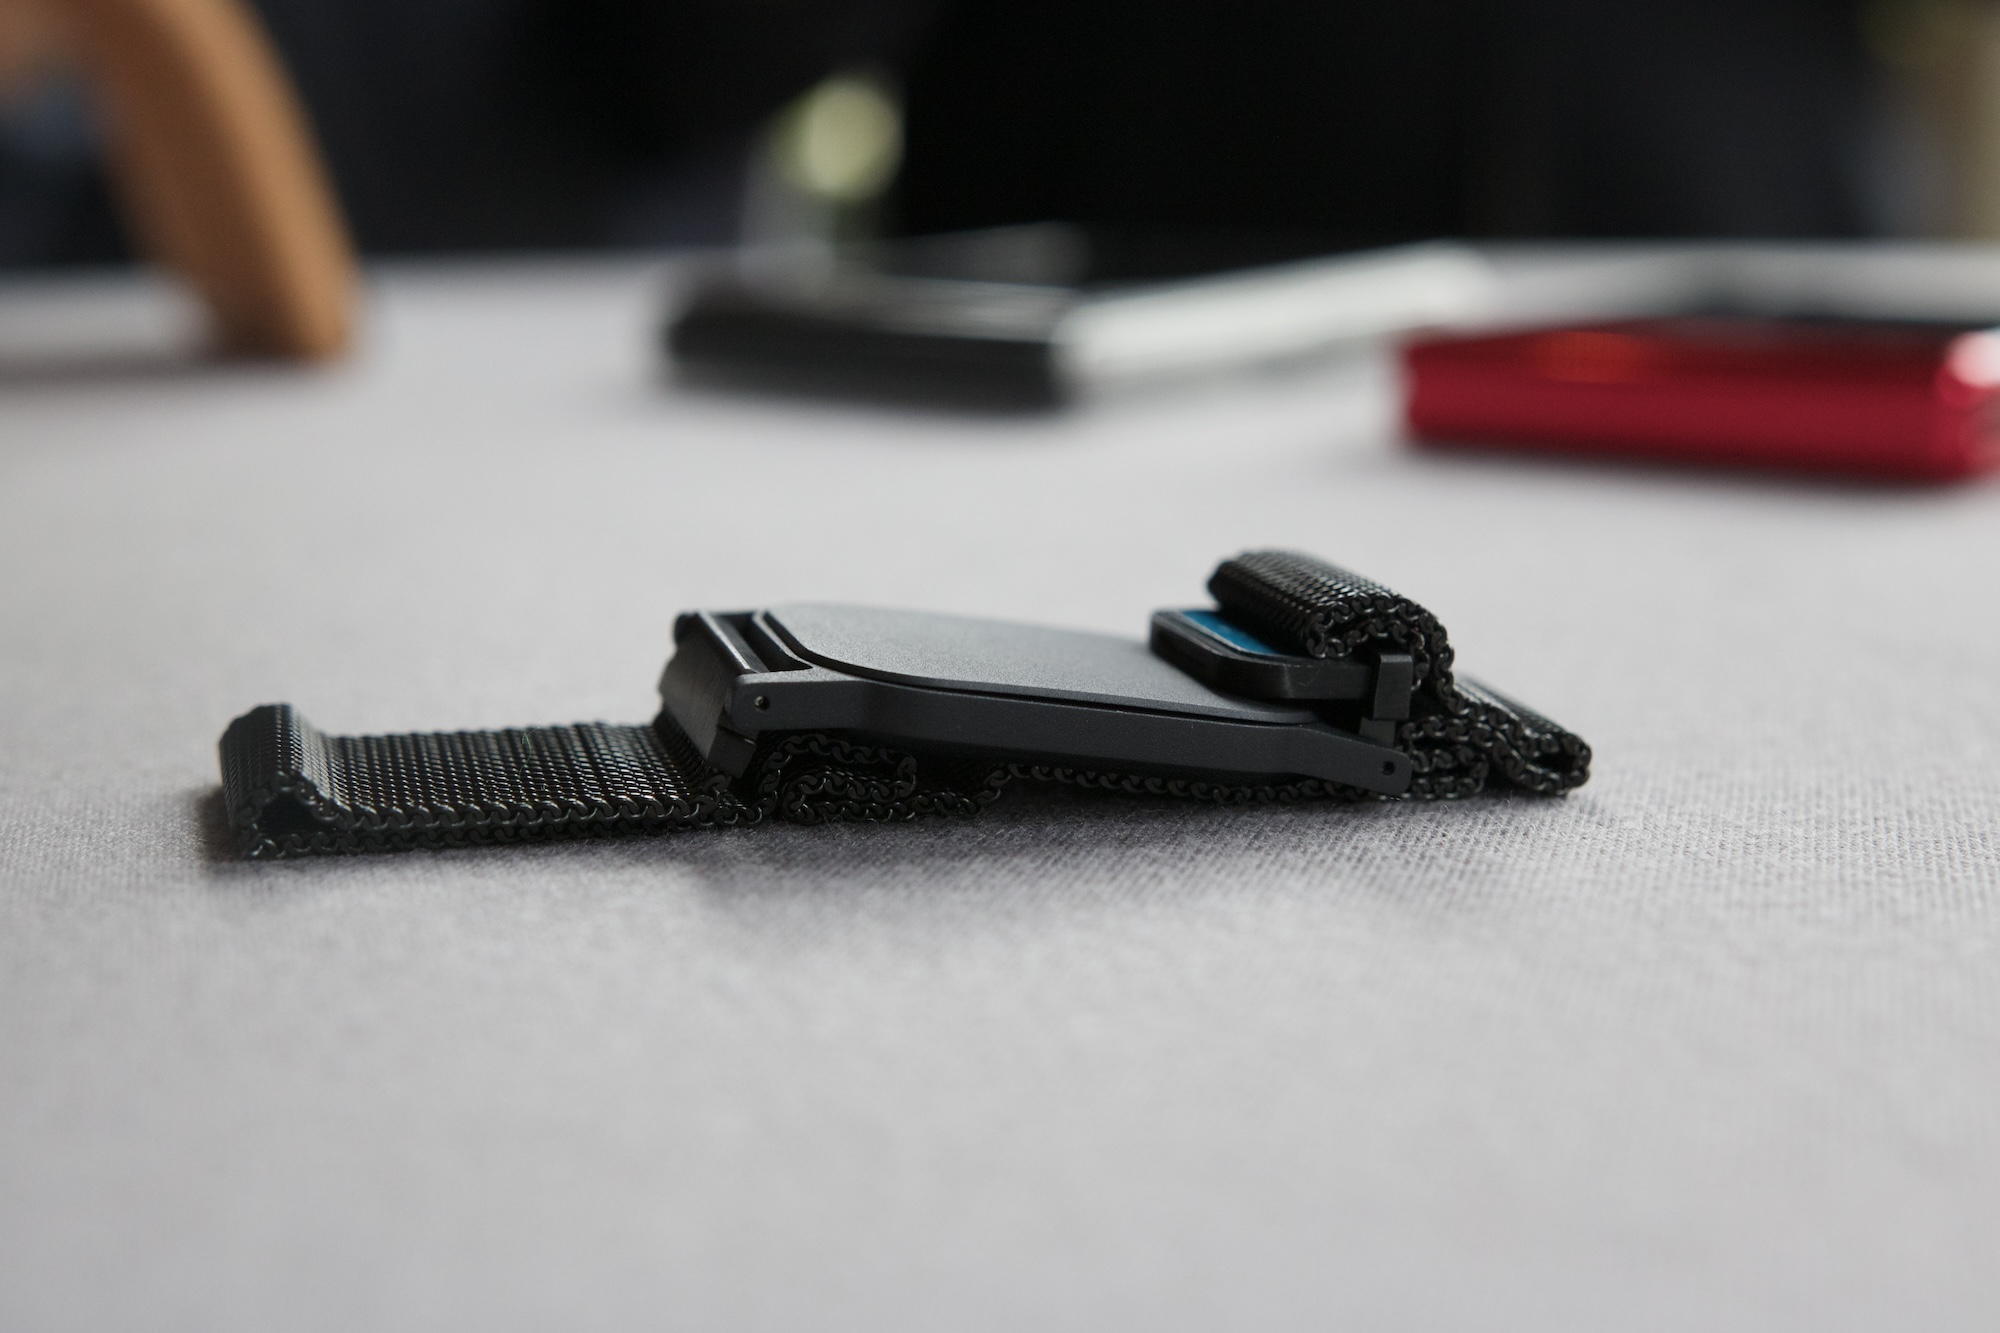 The magnet bracelet for Motorola's concept folding phone.